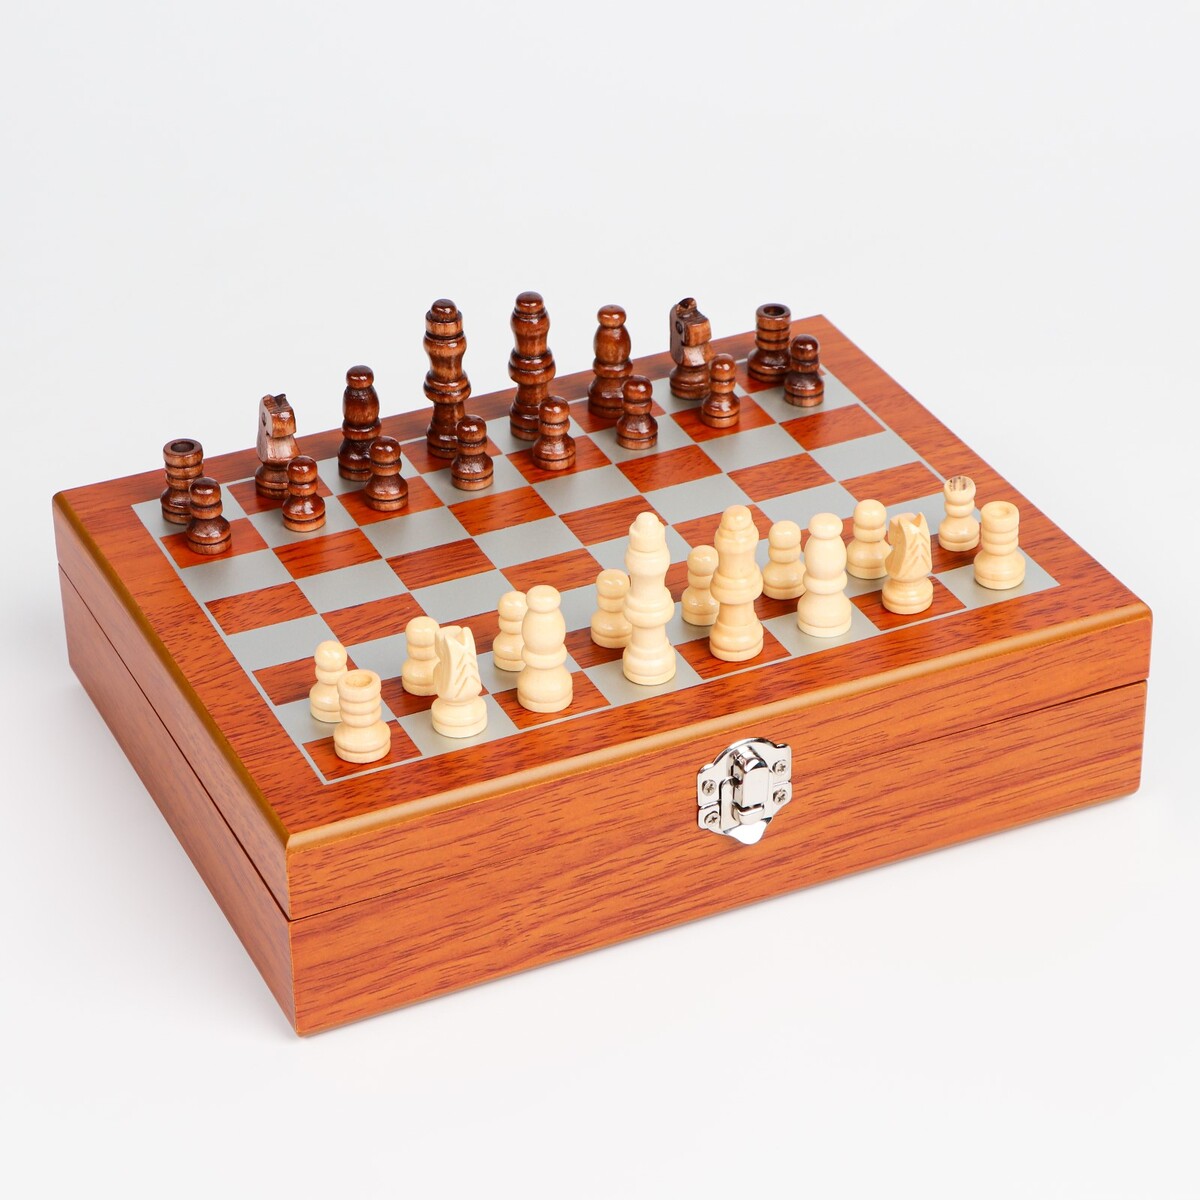 Набор 7 в 1: фляжка 8 oz, с гербом, 4 рюмки, воронка, шахматы, 18 х 24 см набор 4 в 1 шахматы домино 2 колоды карт 25 х 25 см